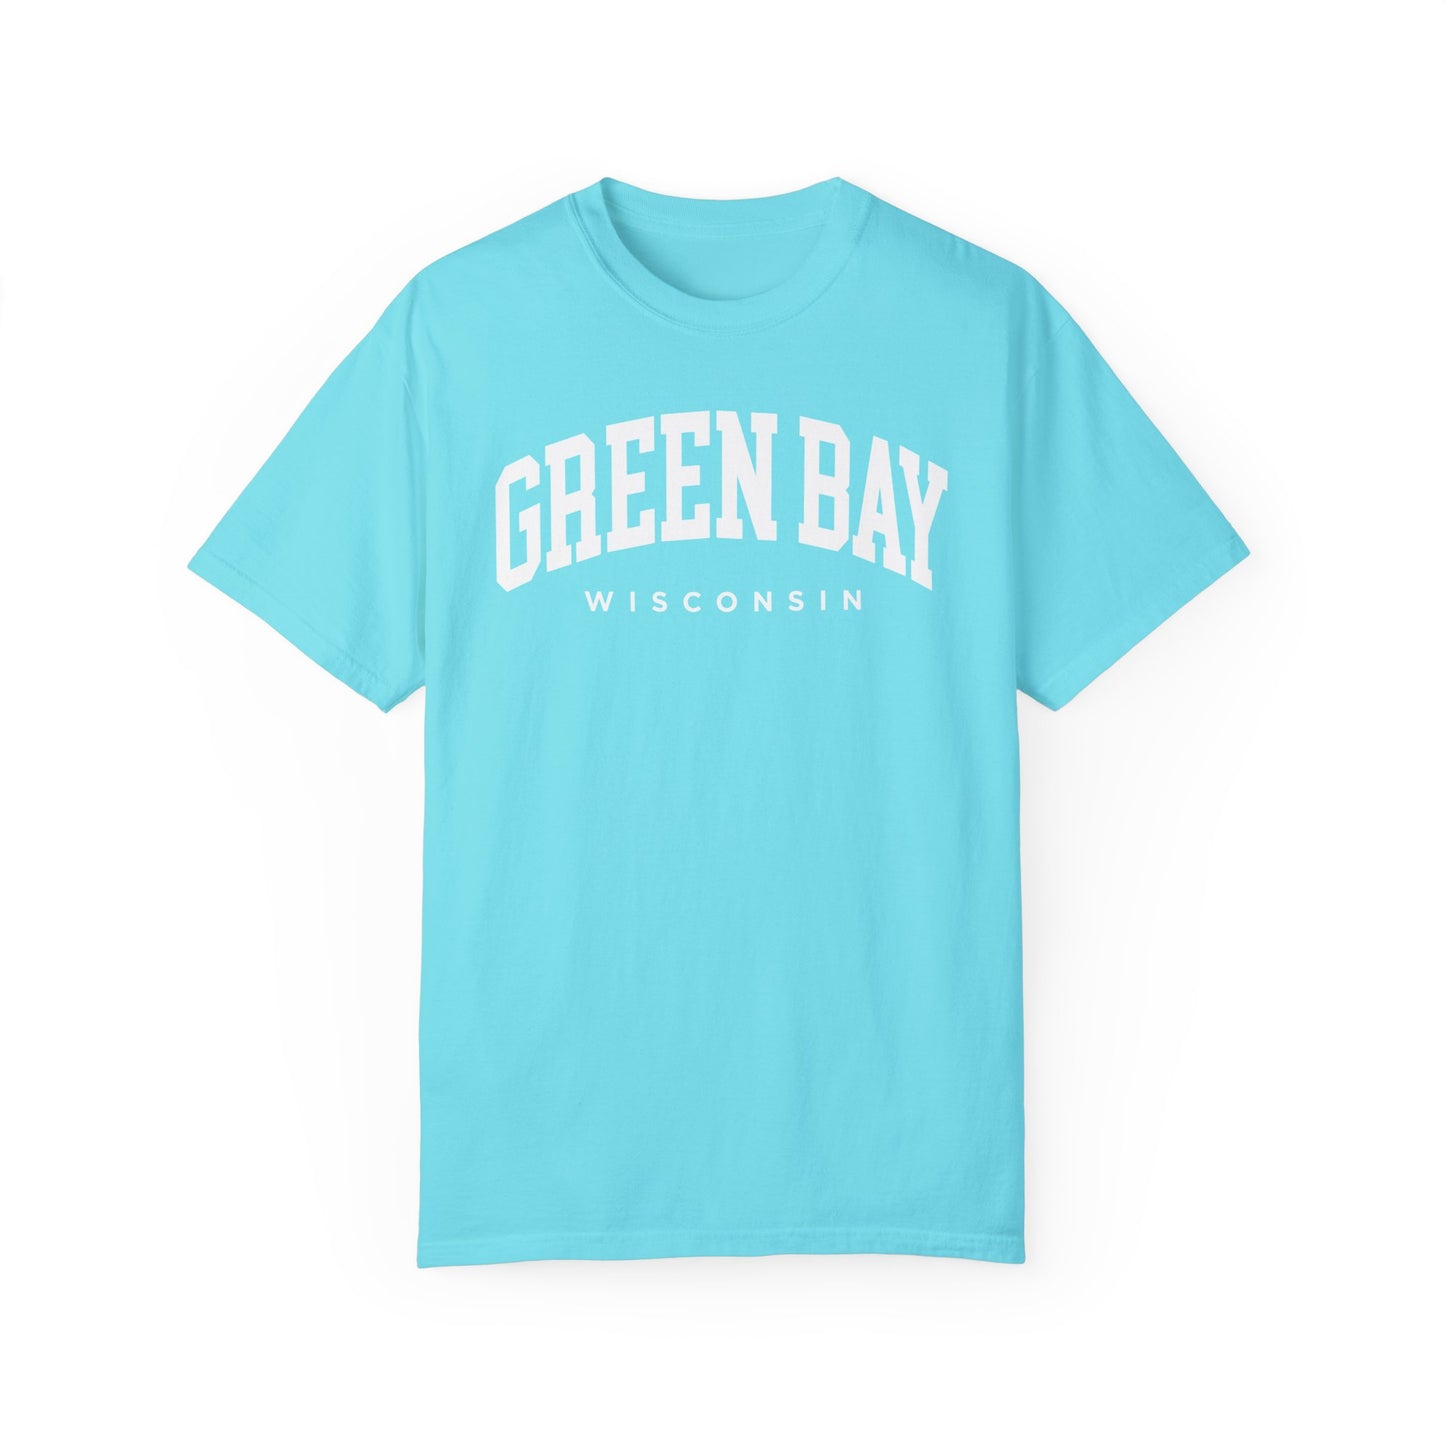 Green Bay Wisconsin Comfort Colors® Tee